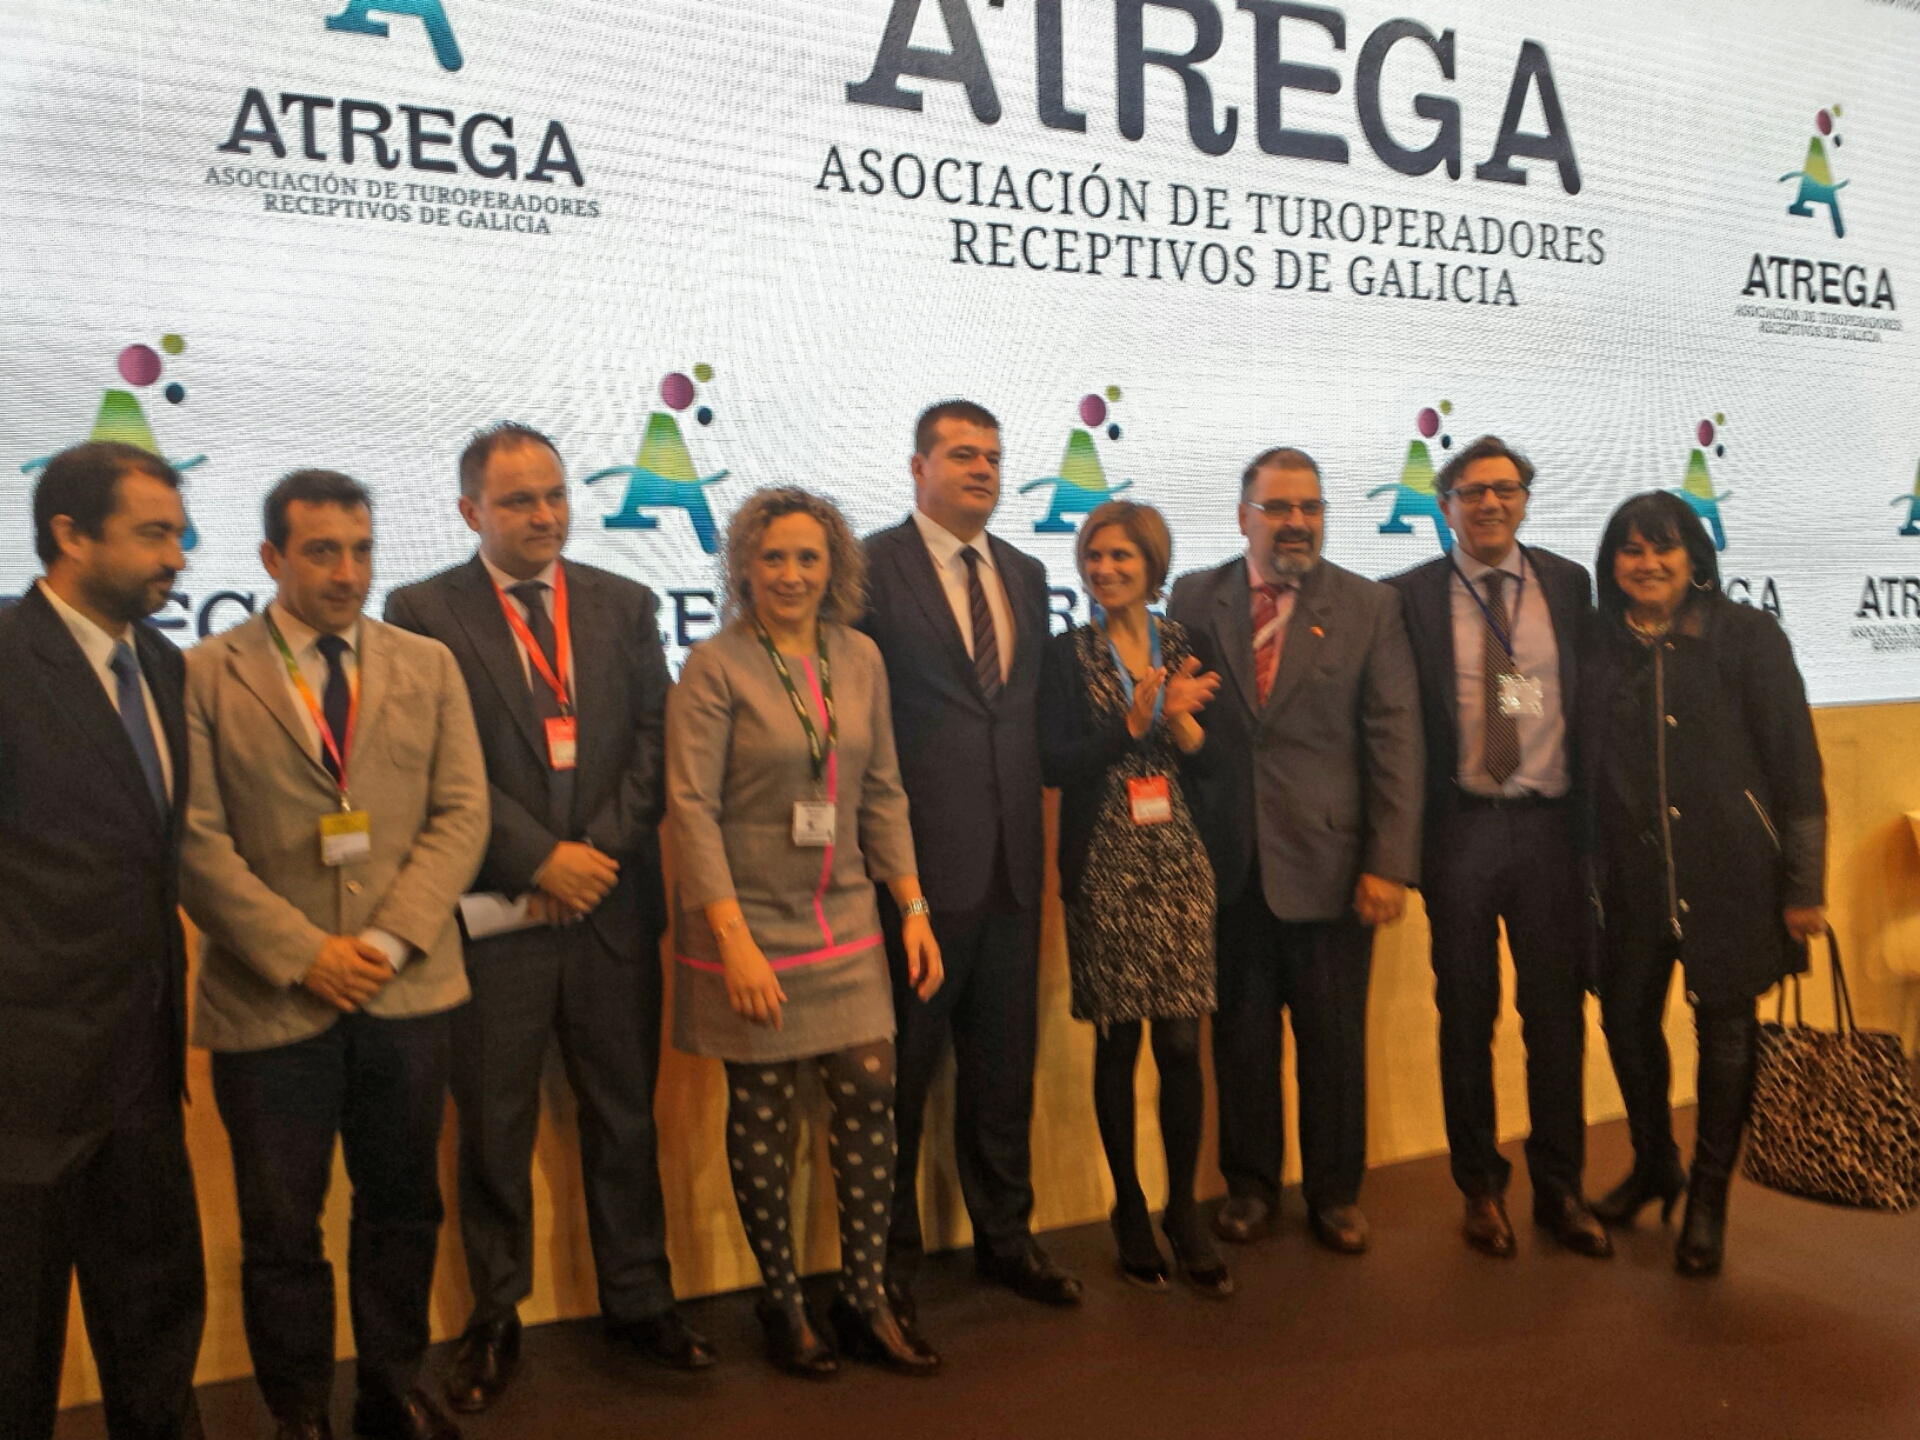 La Asociación de Turoperadores Receptivos de Galicia, ATREGA, se presenta en FITUR